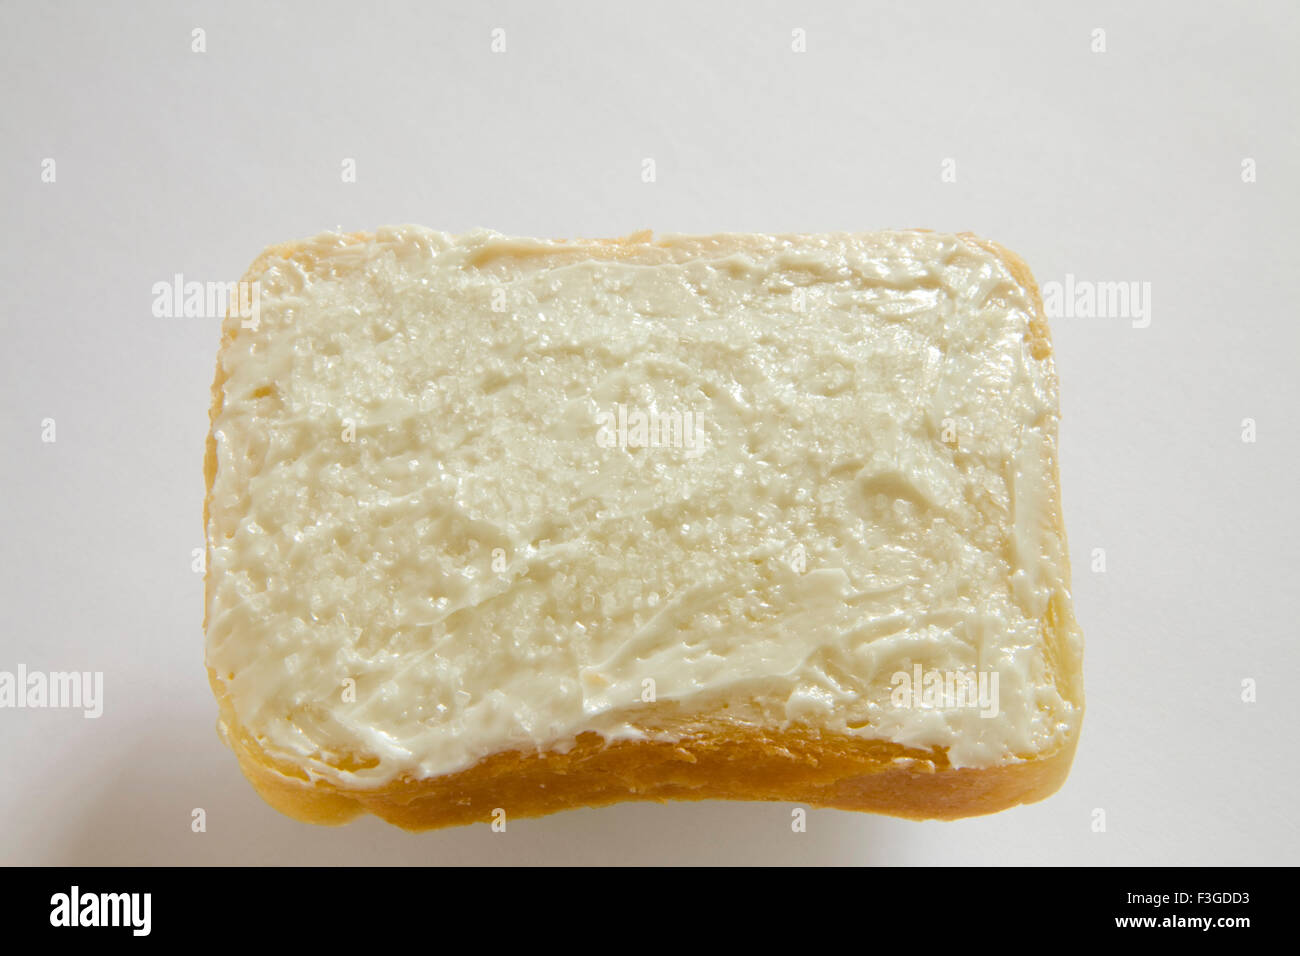 Breakfast food ; butter applied on single slice of bread Stock Photo